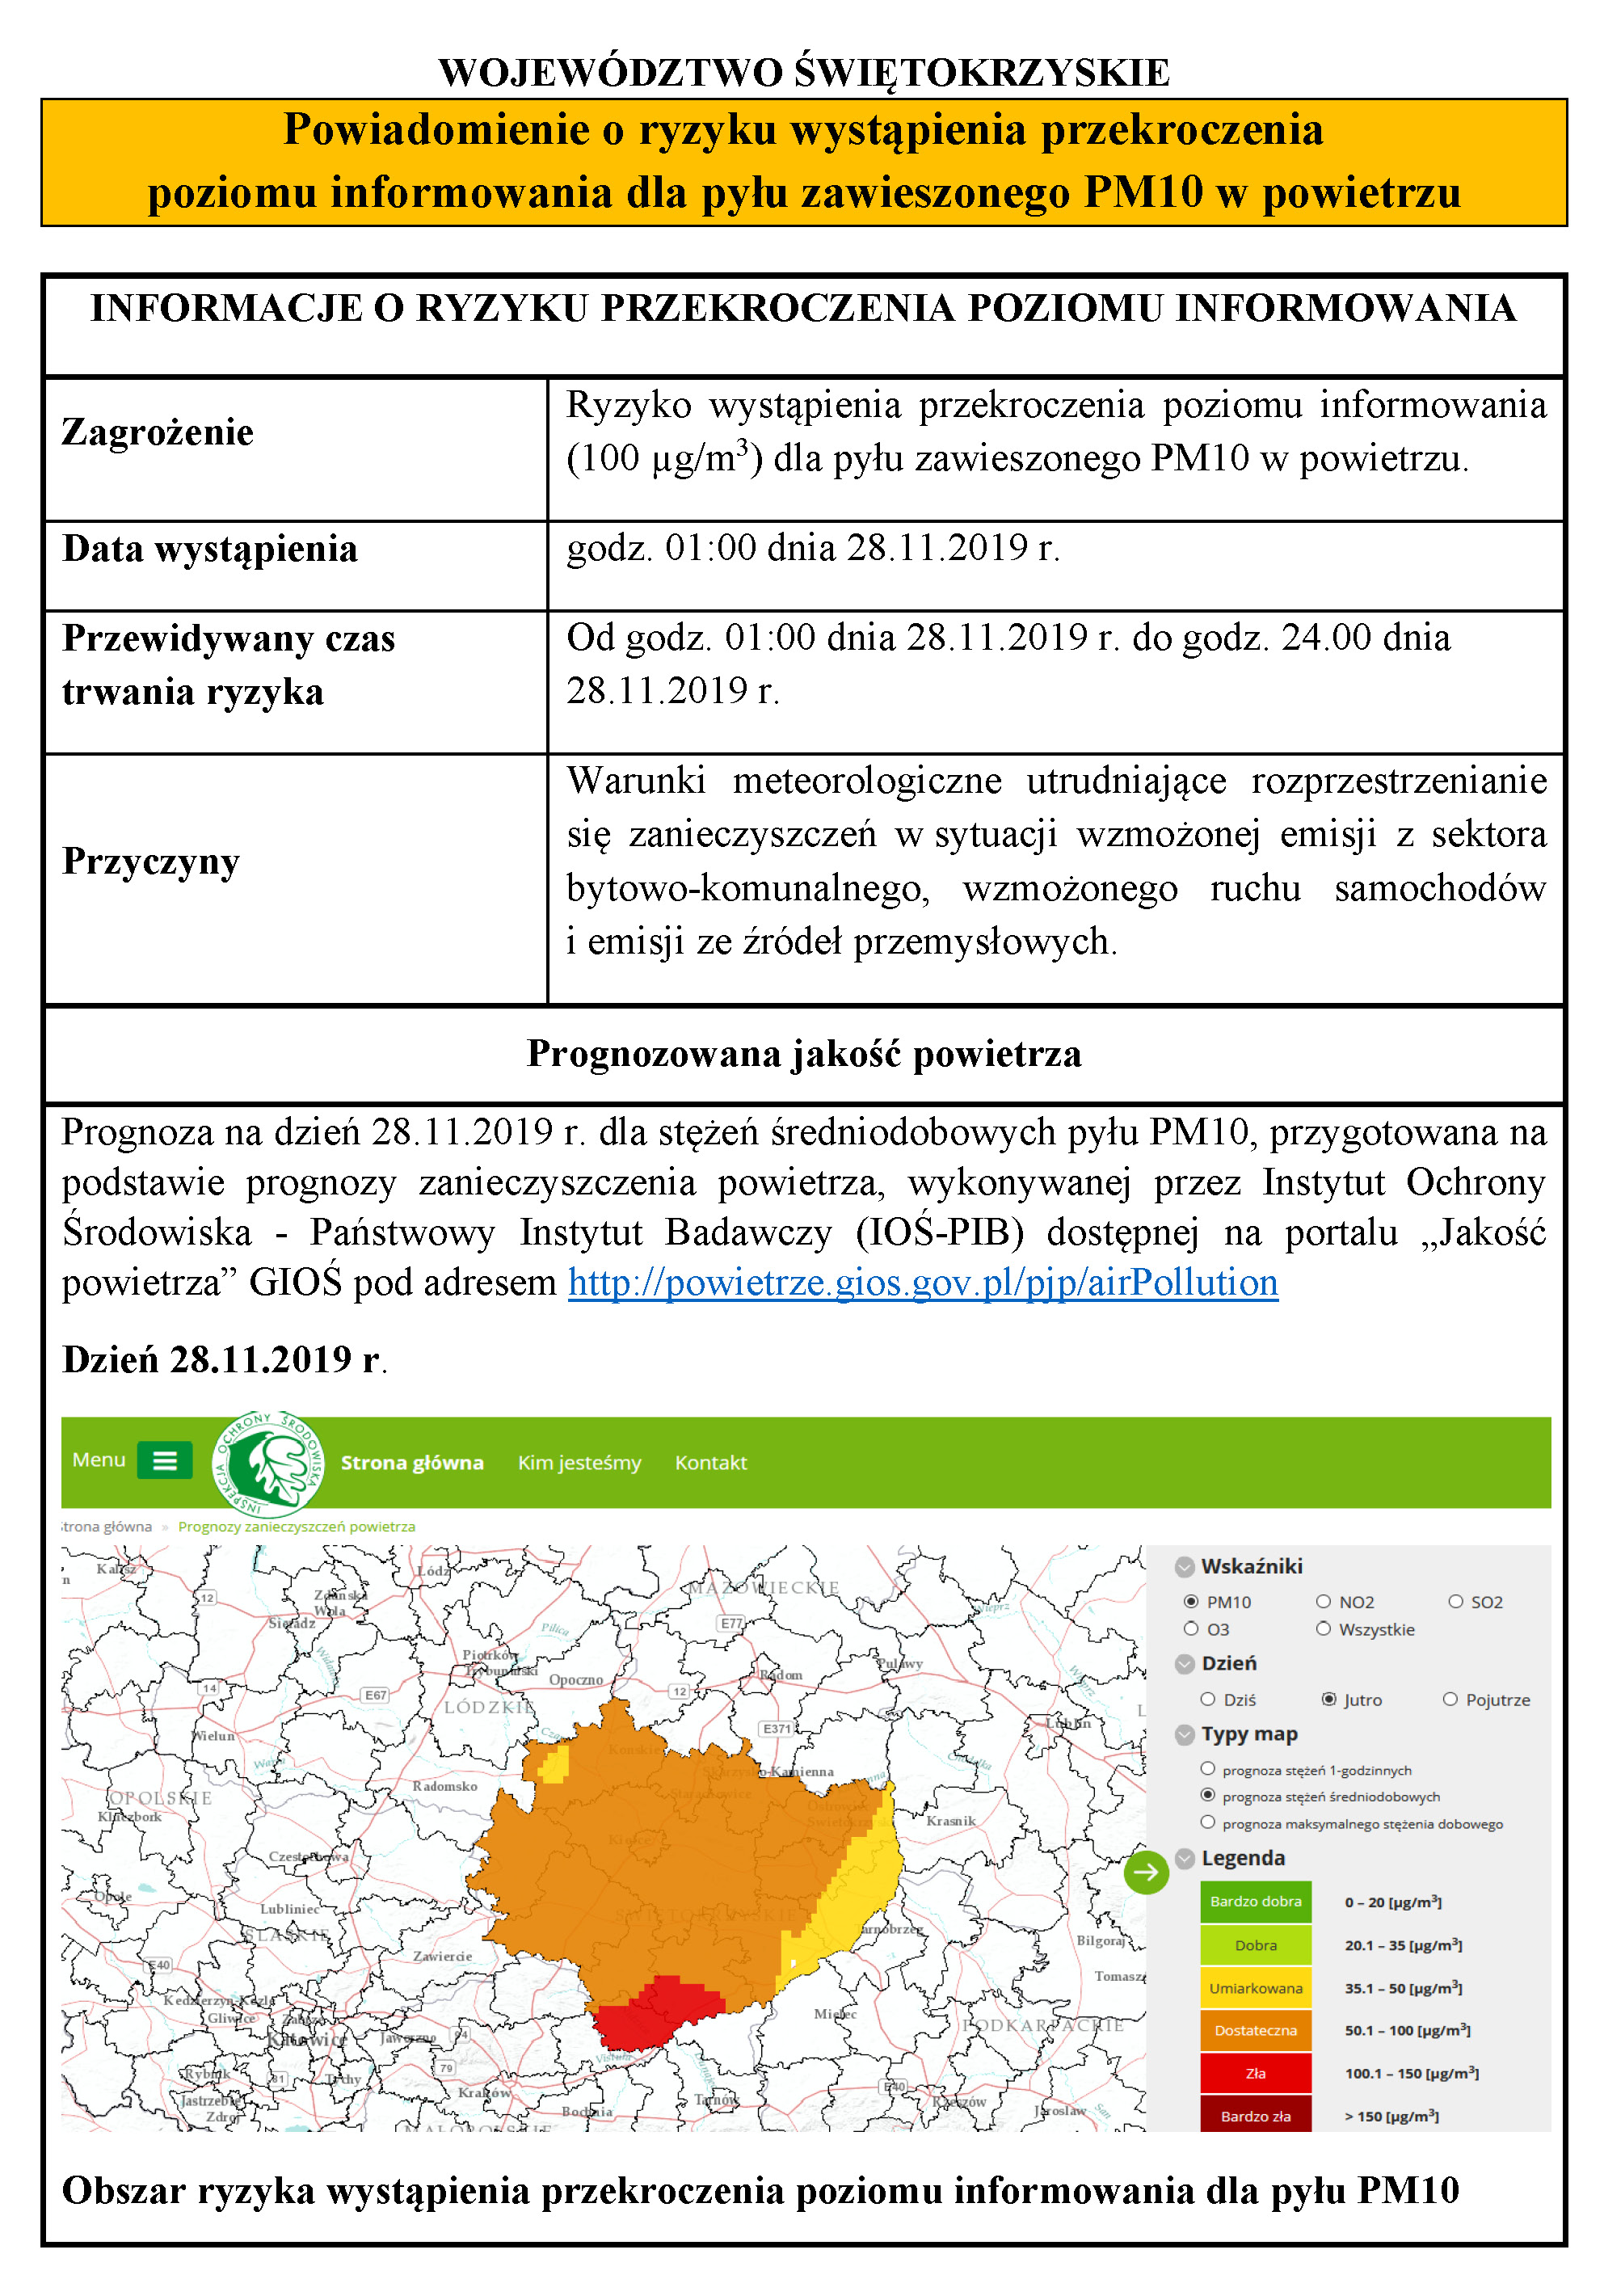 Ryzyko przekroczenia poziomu informowania dla pylu PM10 